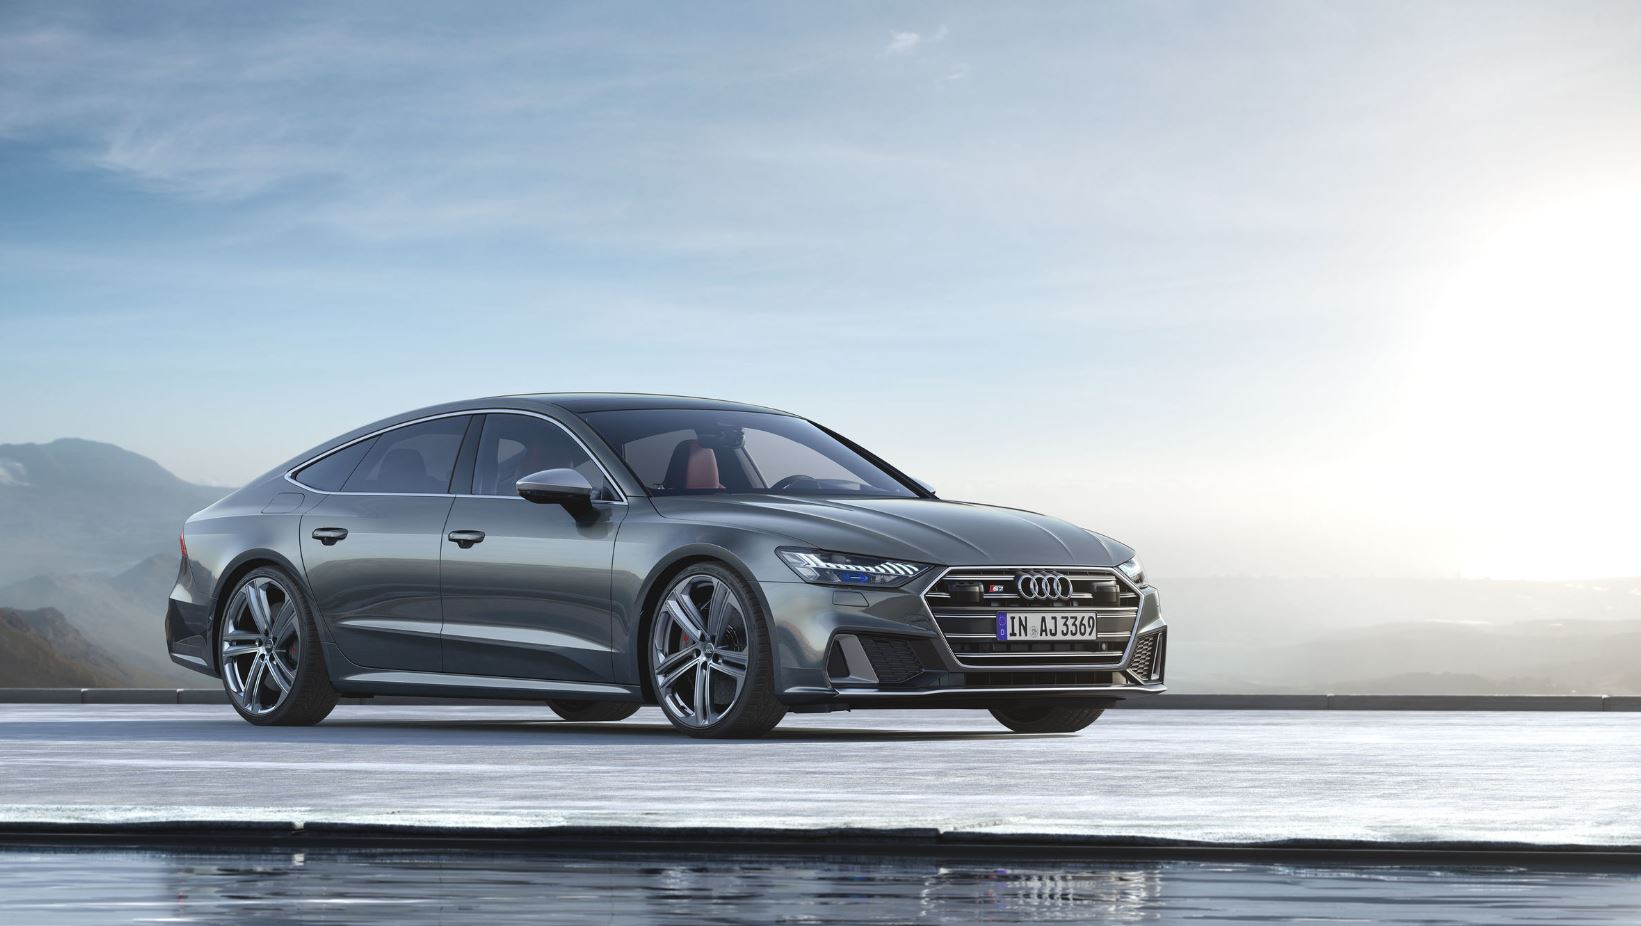 2019 Audi S6 ve S7 modellerin tanıtıldı: Hafif hibrit destekli TDI motor